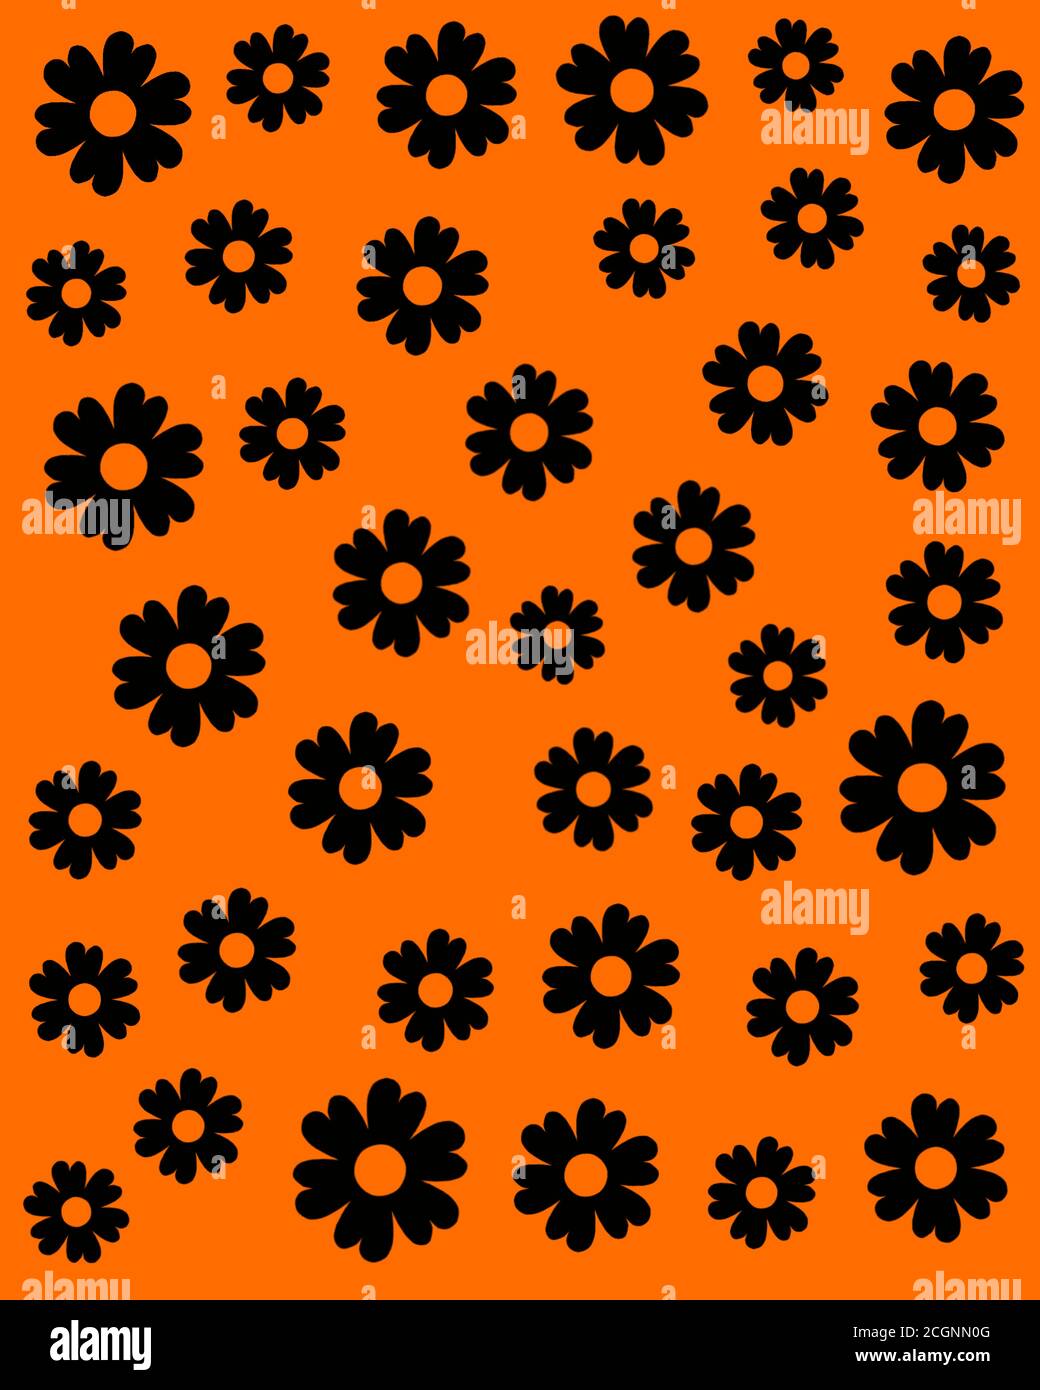 Eine druckbare nahtlose schwarze Farbe Blume Design-Muster isoliert auf orange farbigen Hintergrund für Tuch, Stoff, Textil, Design, Muster. Vektormaterial. Stock Vektor